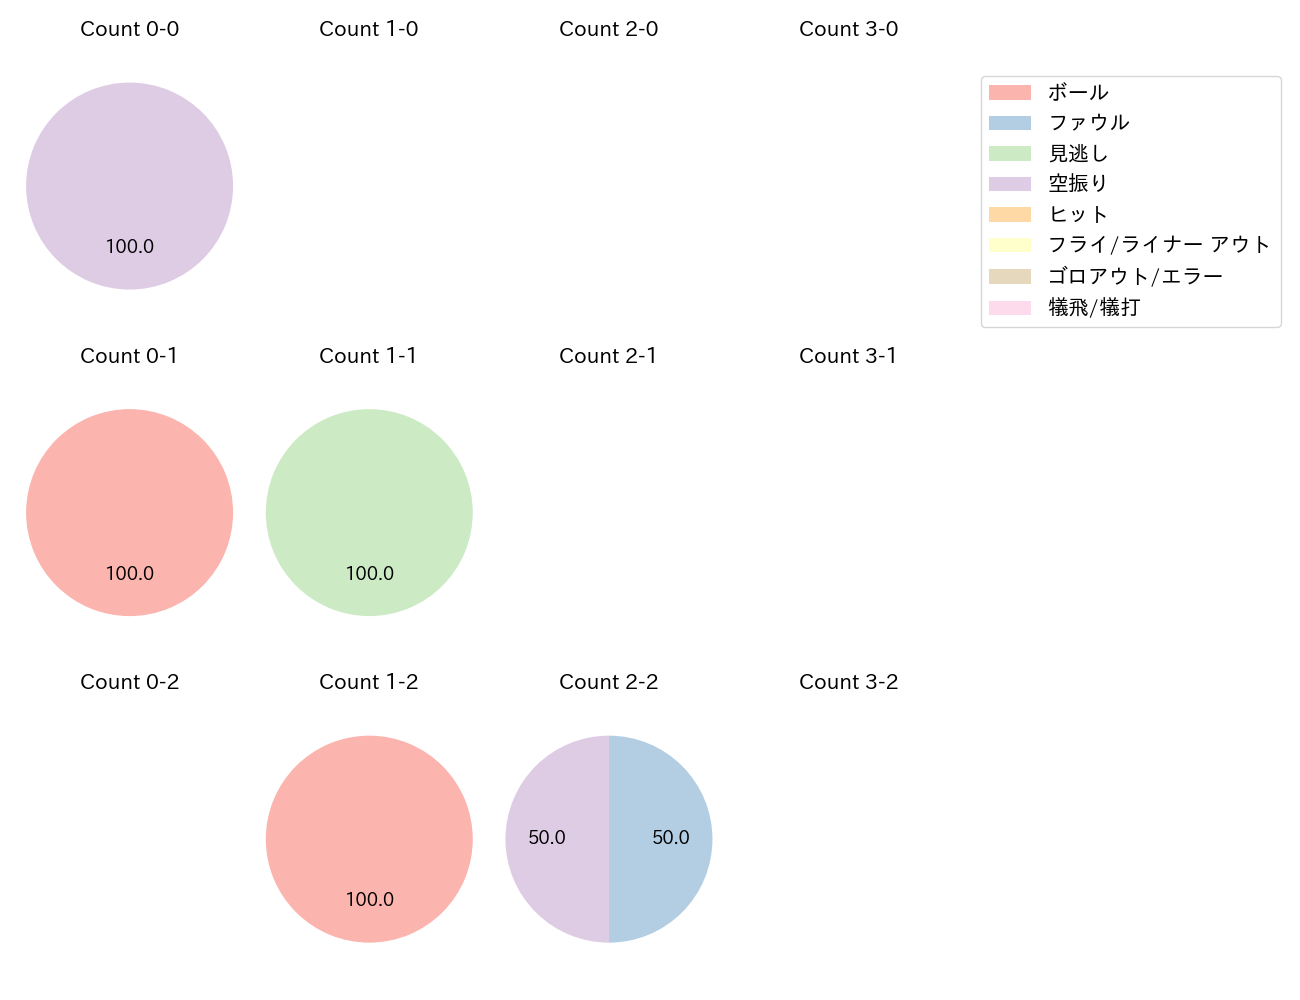 佐藤 直樹の球数分布(2021年5月)